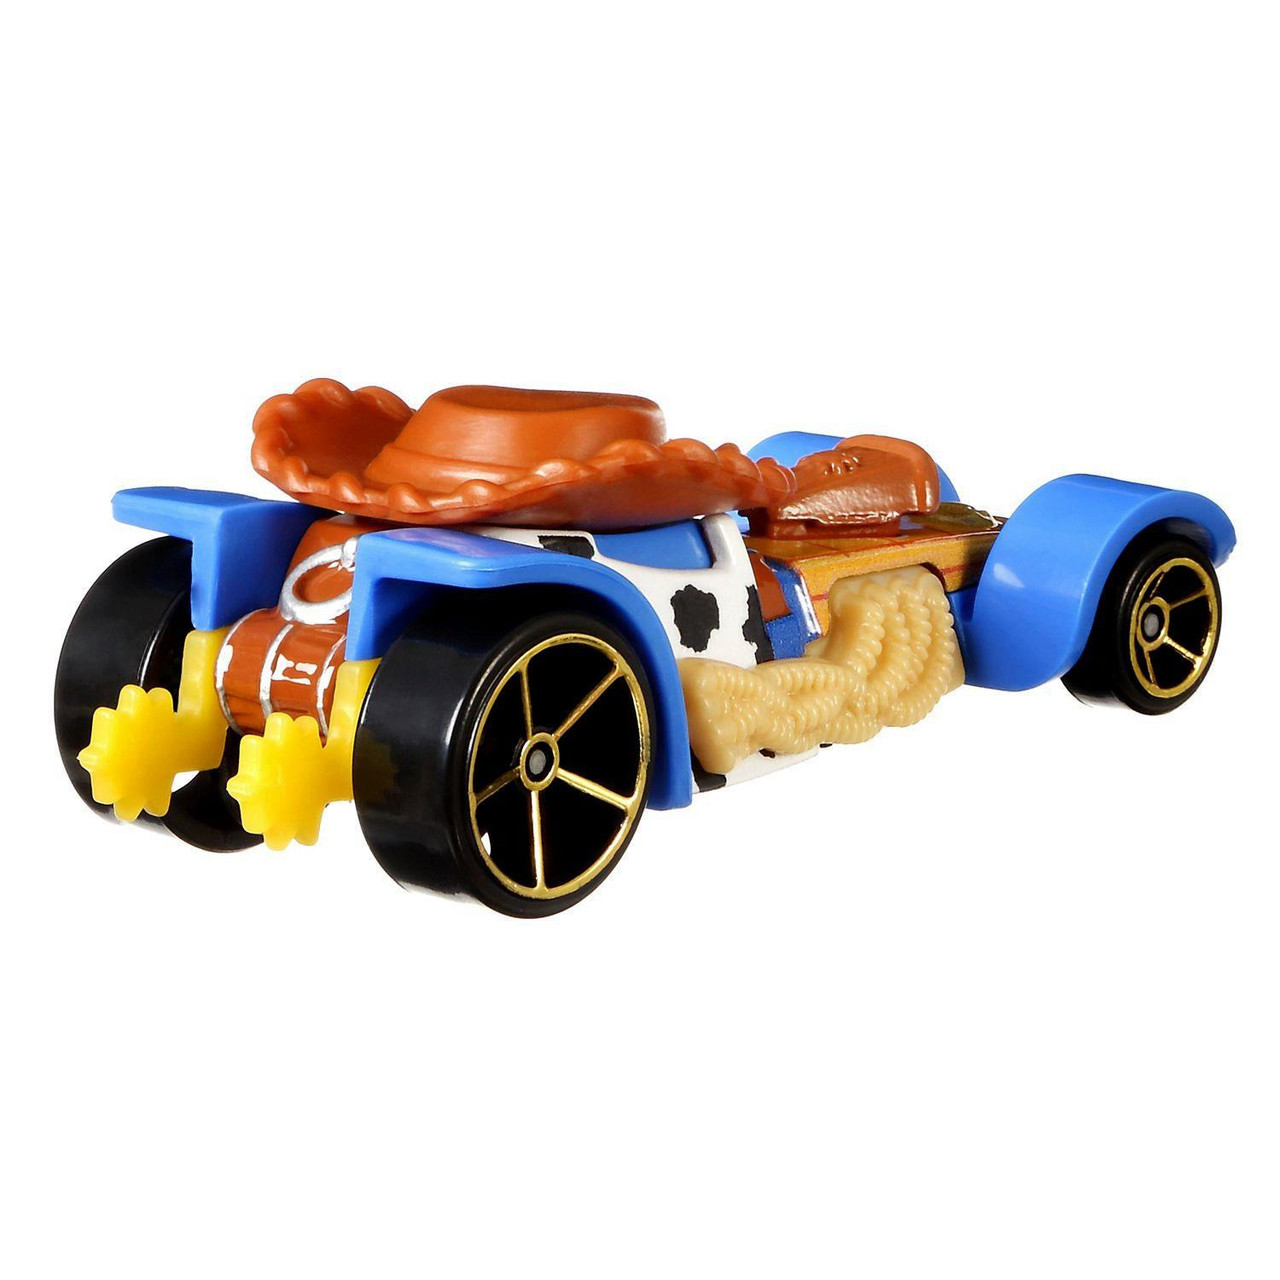 Hot Wheels Die-cast Metal Disney Pixar Toy Story 4 Woody Character Cars 887961738308 